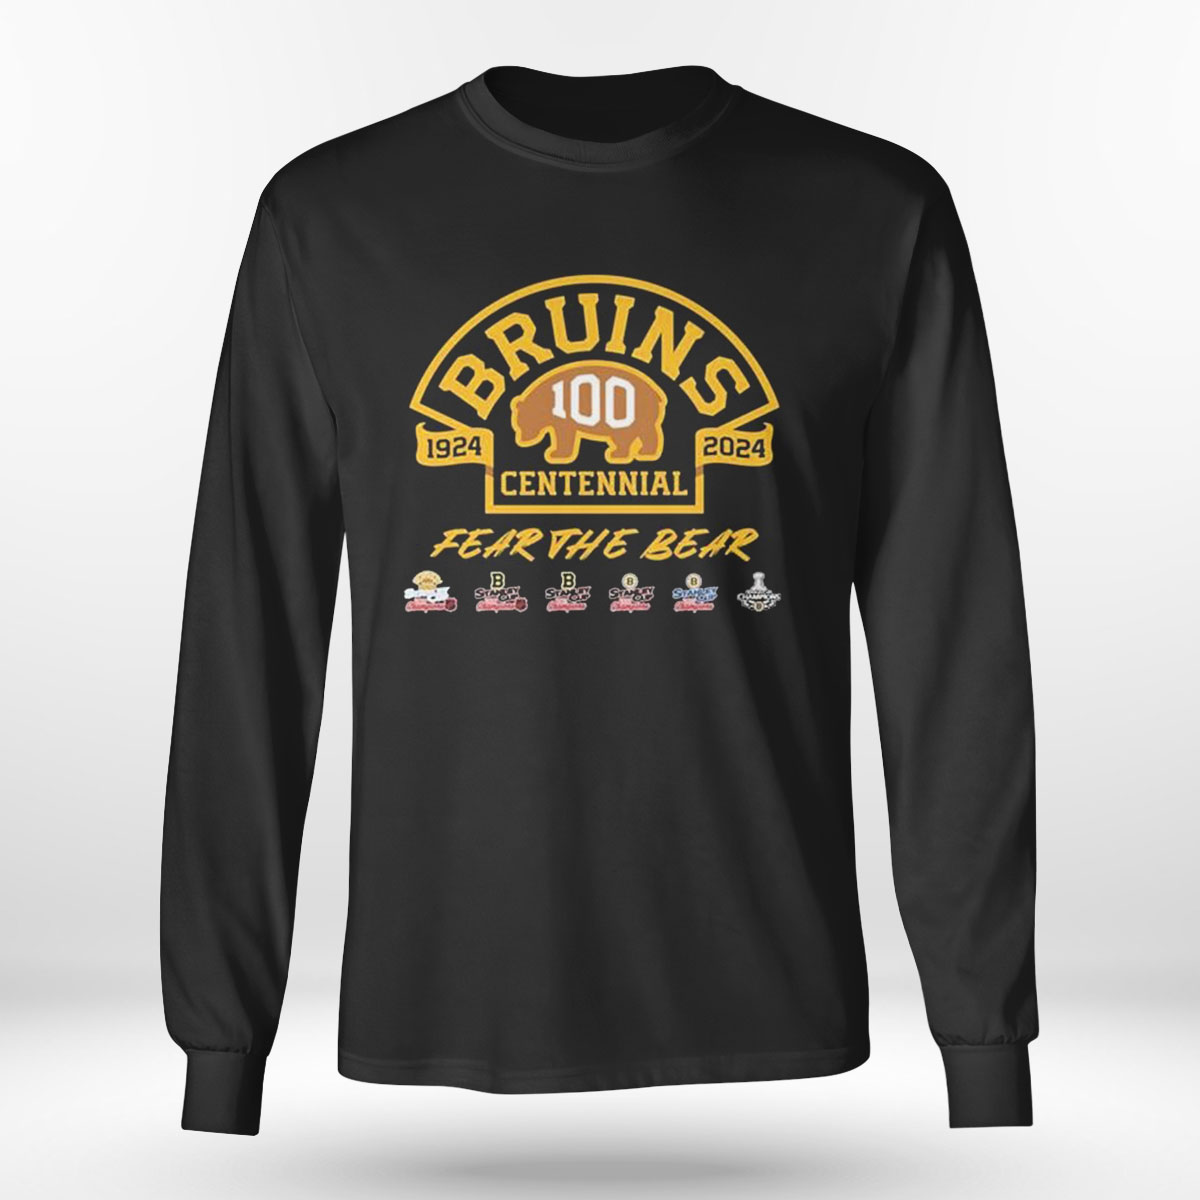 Boston Bruins 100th Anniversary 1924 2024 Fear The Bear T-shirt